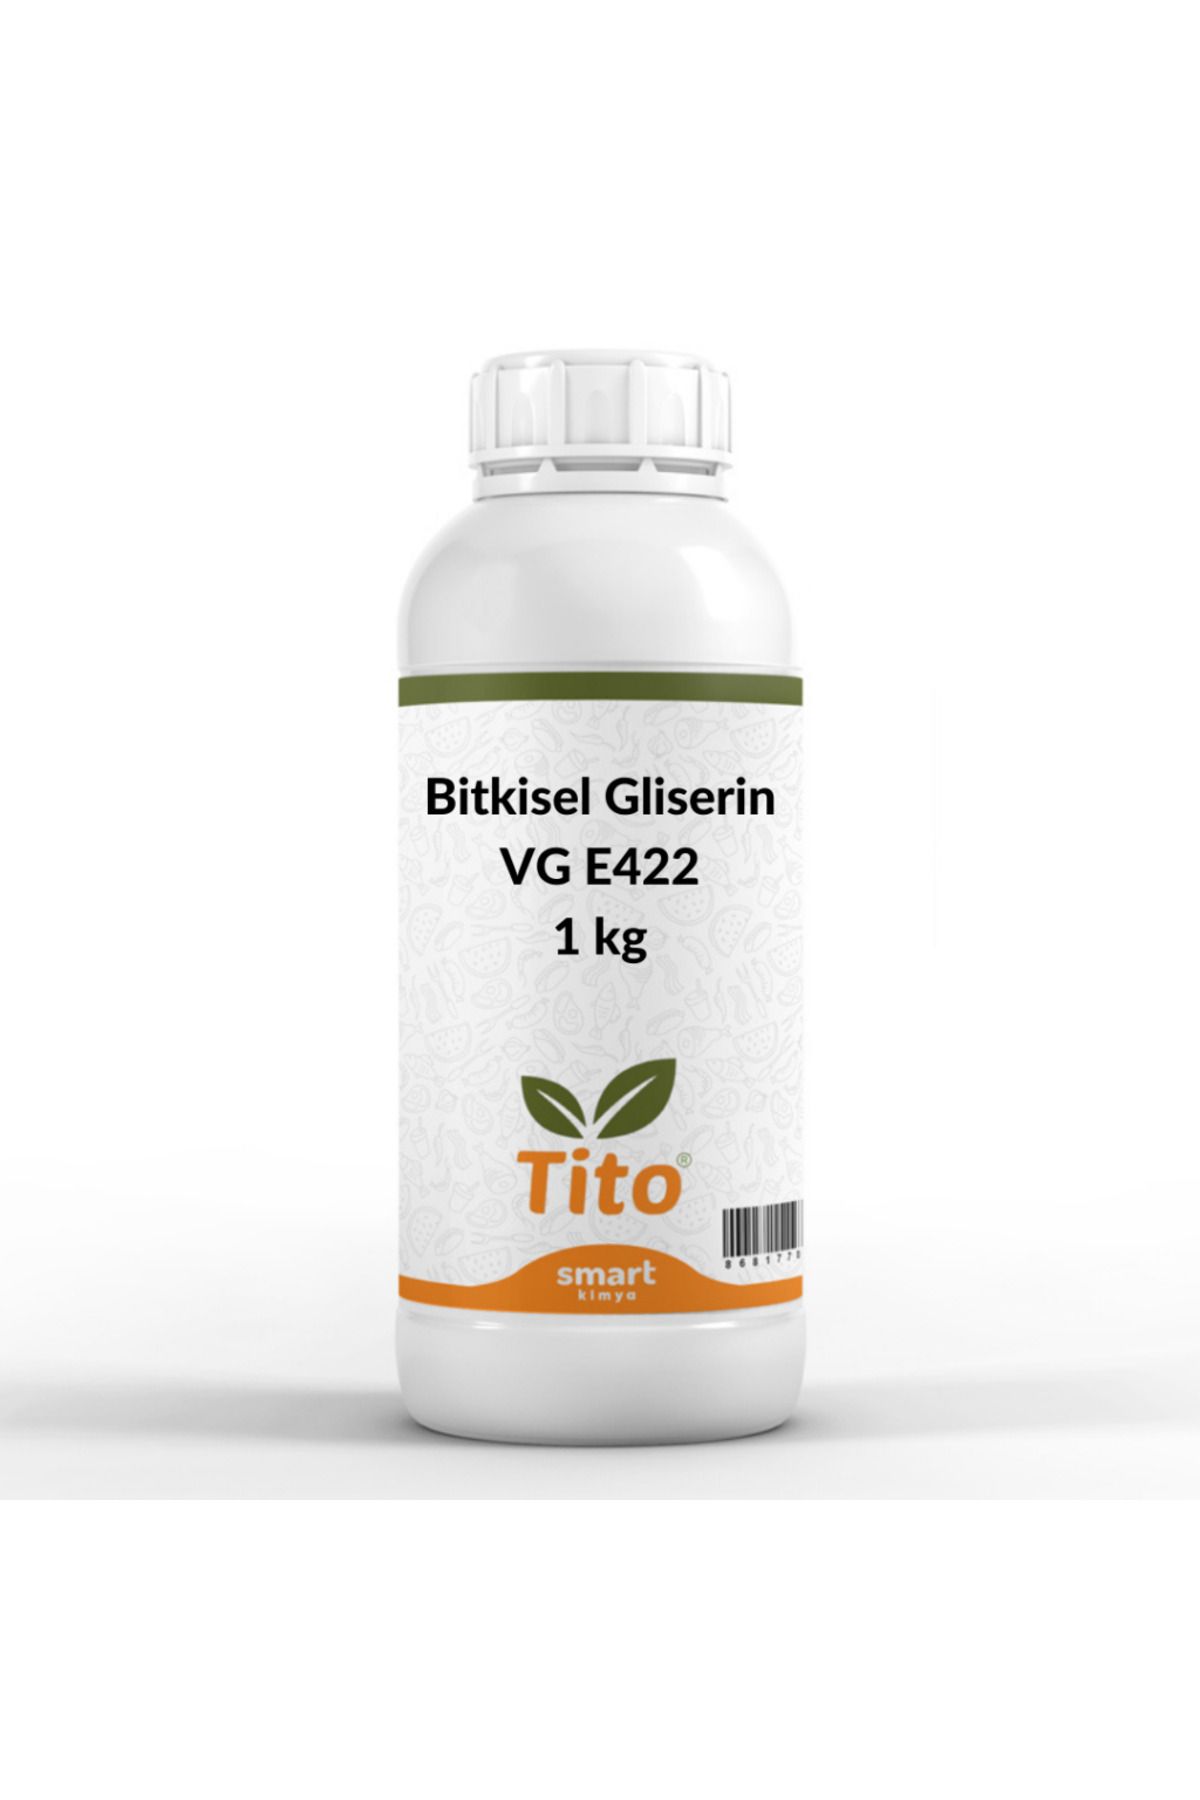 tito Bitkisel Gliserin Vg (vegetable Glycerin) E422 1 kg